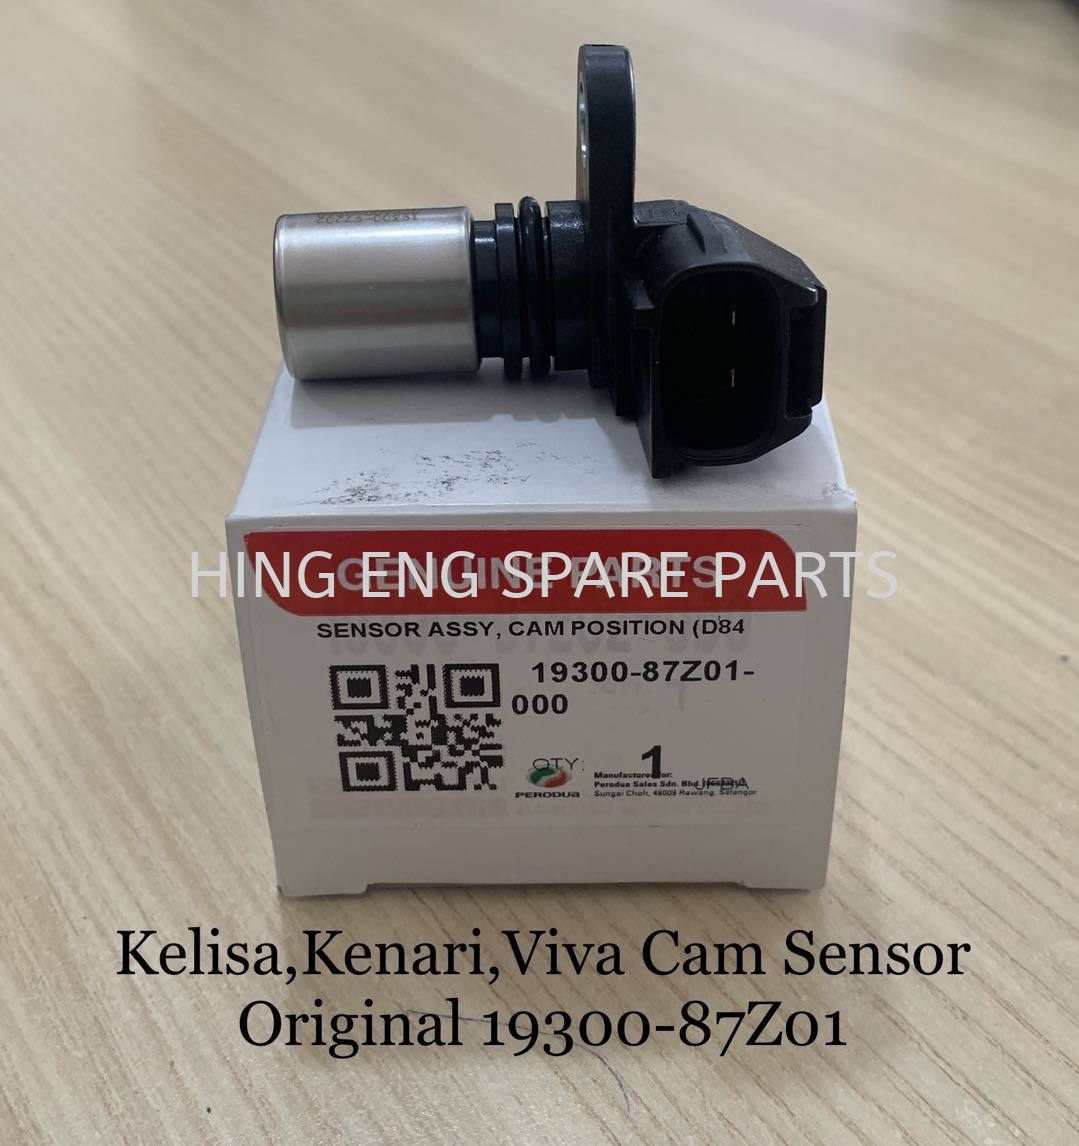 Kelisa Kenari Viva Cam Sensor Original Cam Sensor Sensor System Perodua Selangor Malaysia Kuala Lumpur Kl